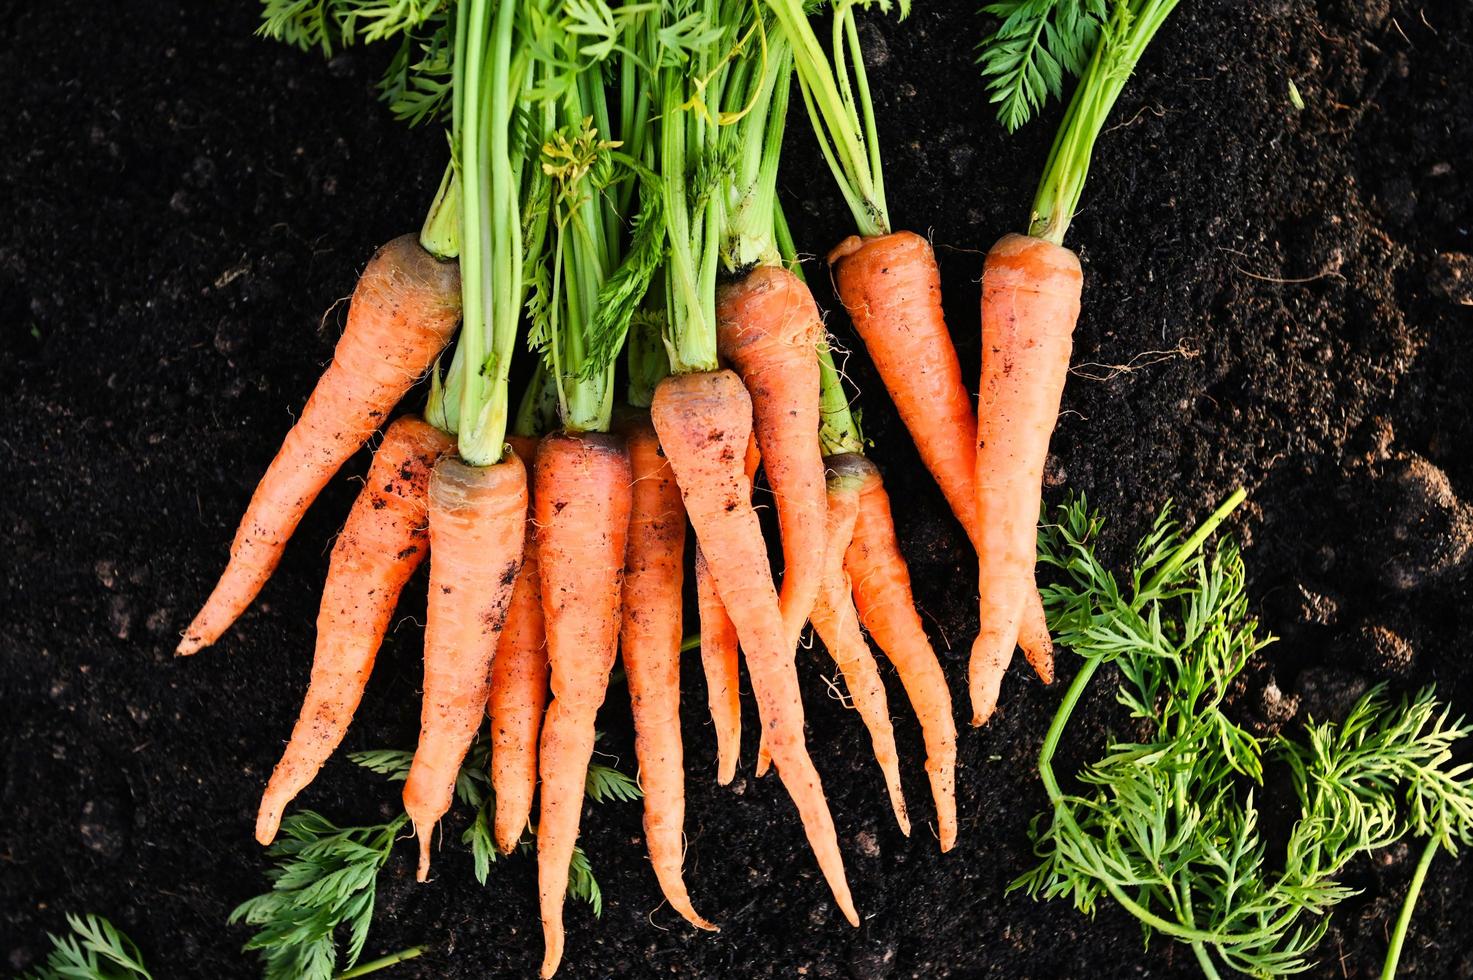 zanahoria en el suelo, zanahorias frescas que crecen en el campo de zanahorias, la verdura crece en el jardín en el suelo, granja orgánica, cosecha, producto agrícola, naturaleza foto